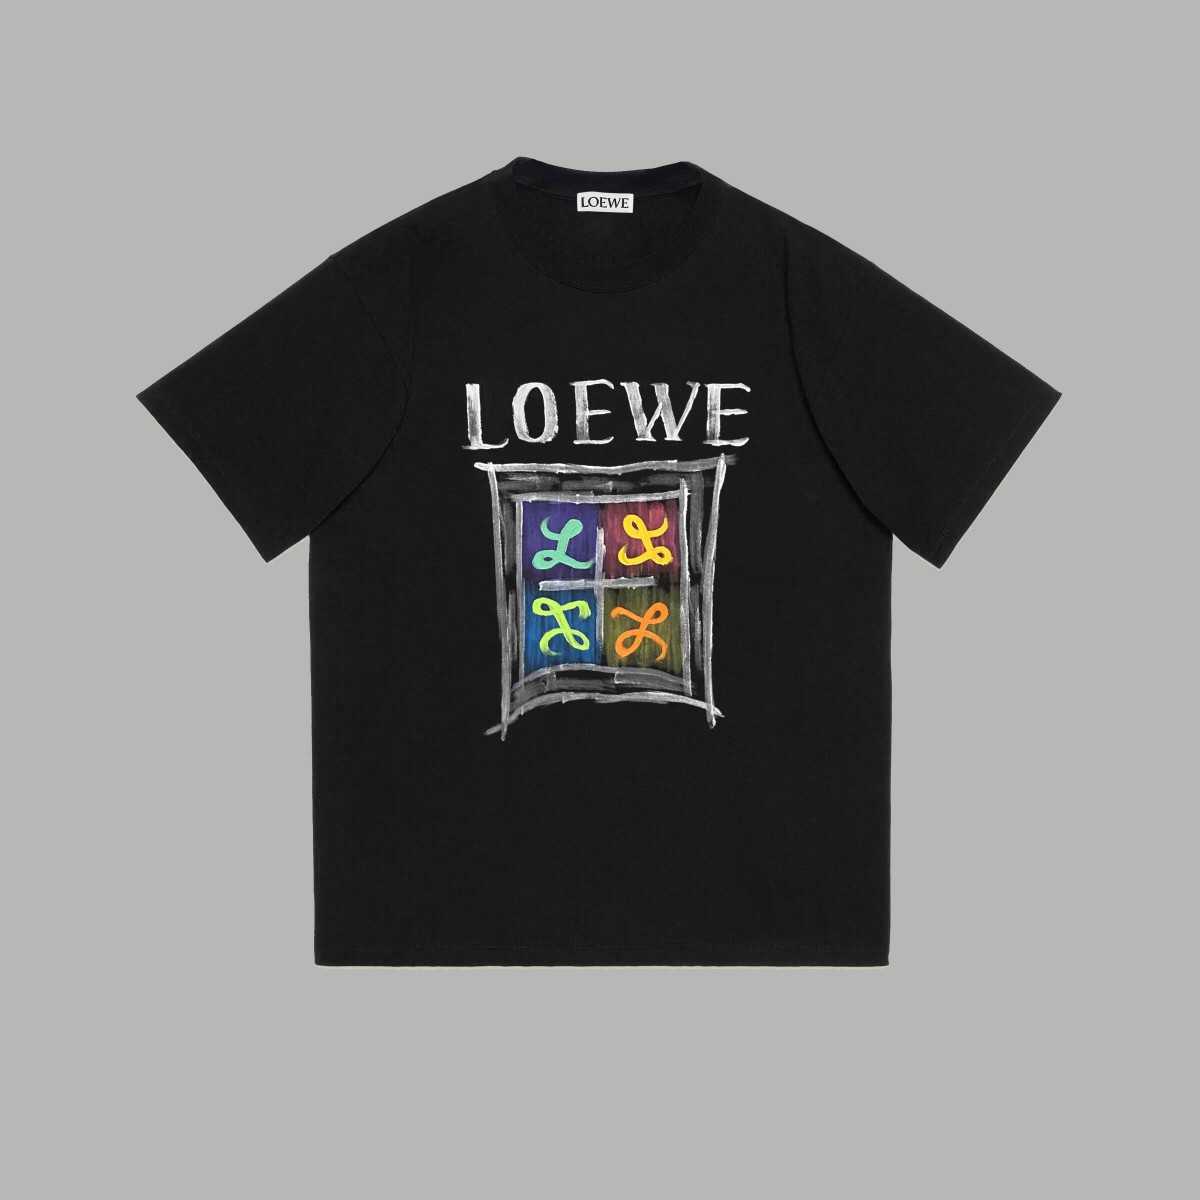 Loewe Clothing T-Shirt Doodle Printing Unisex Cotton Short Sleeve